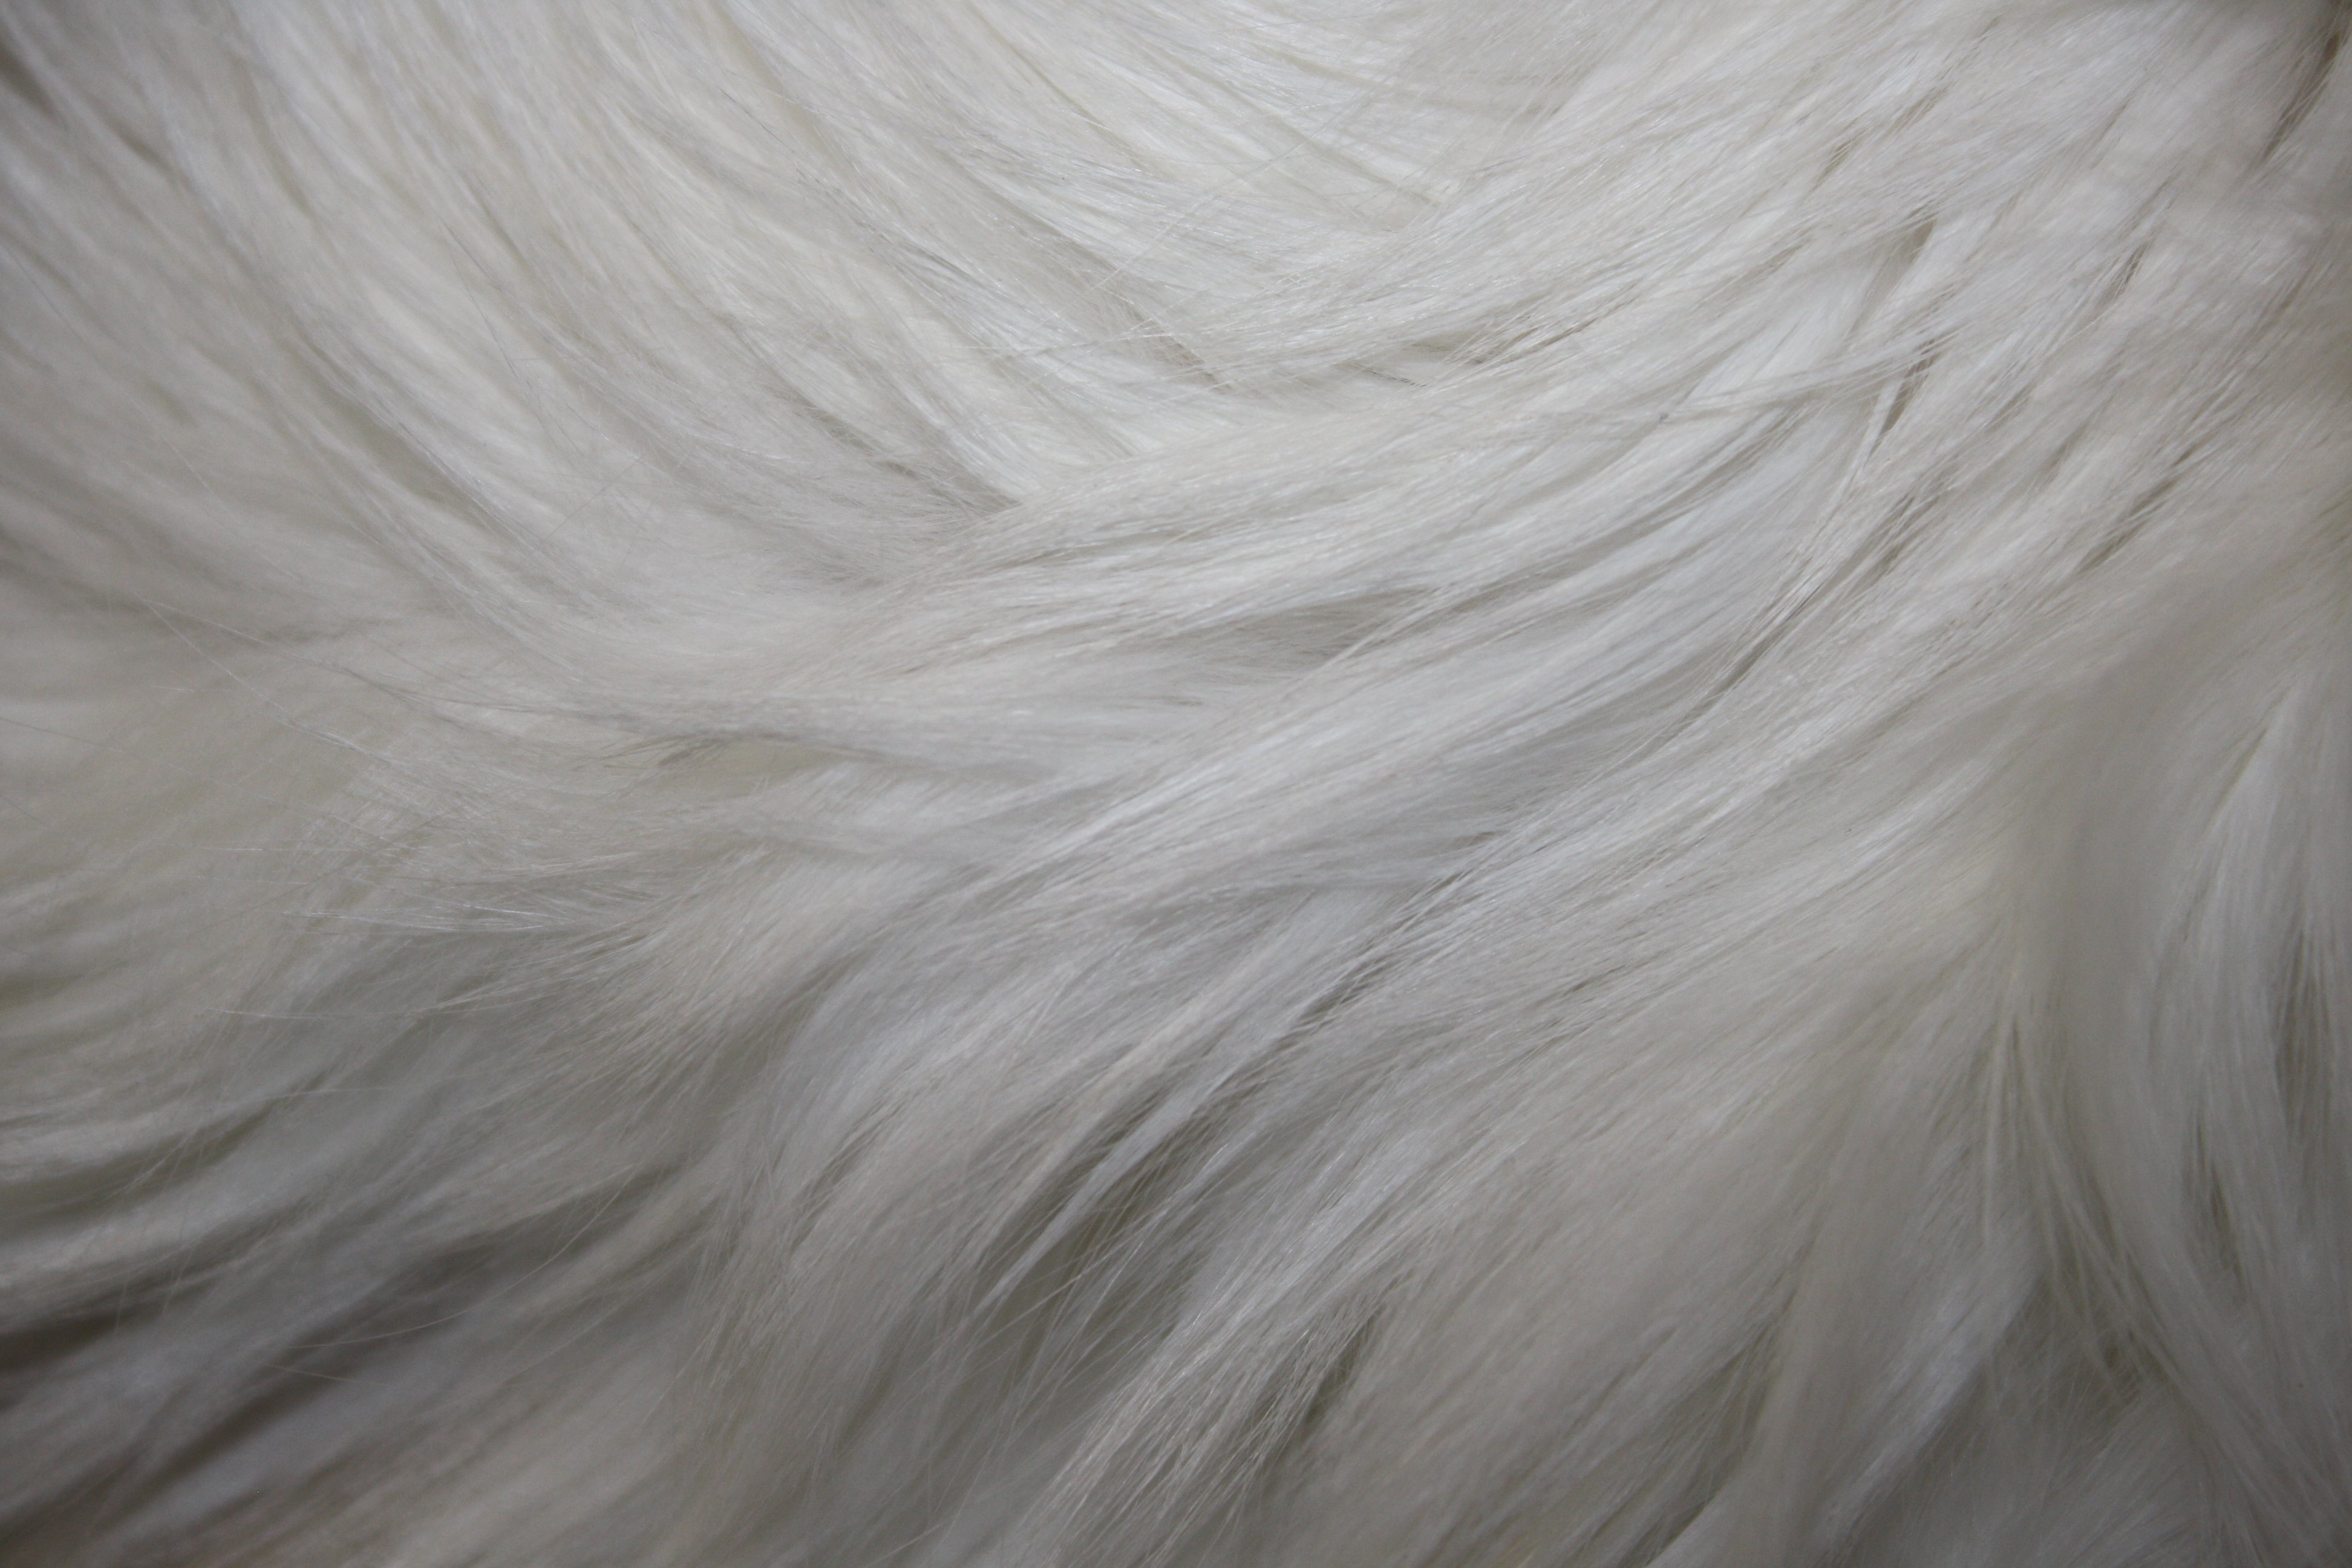 White Fur Texture Picture | Free Photograph | Photos Public Domain